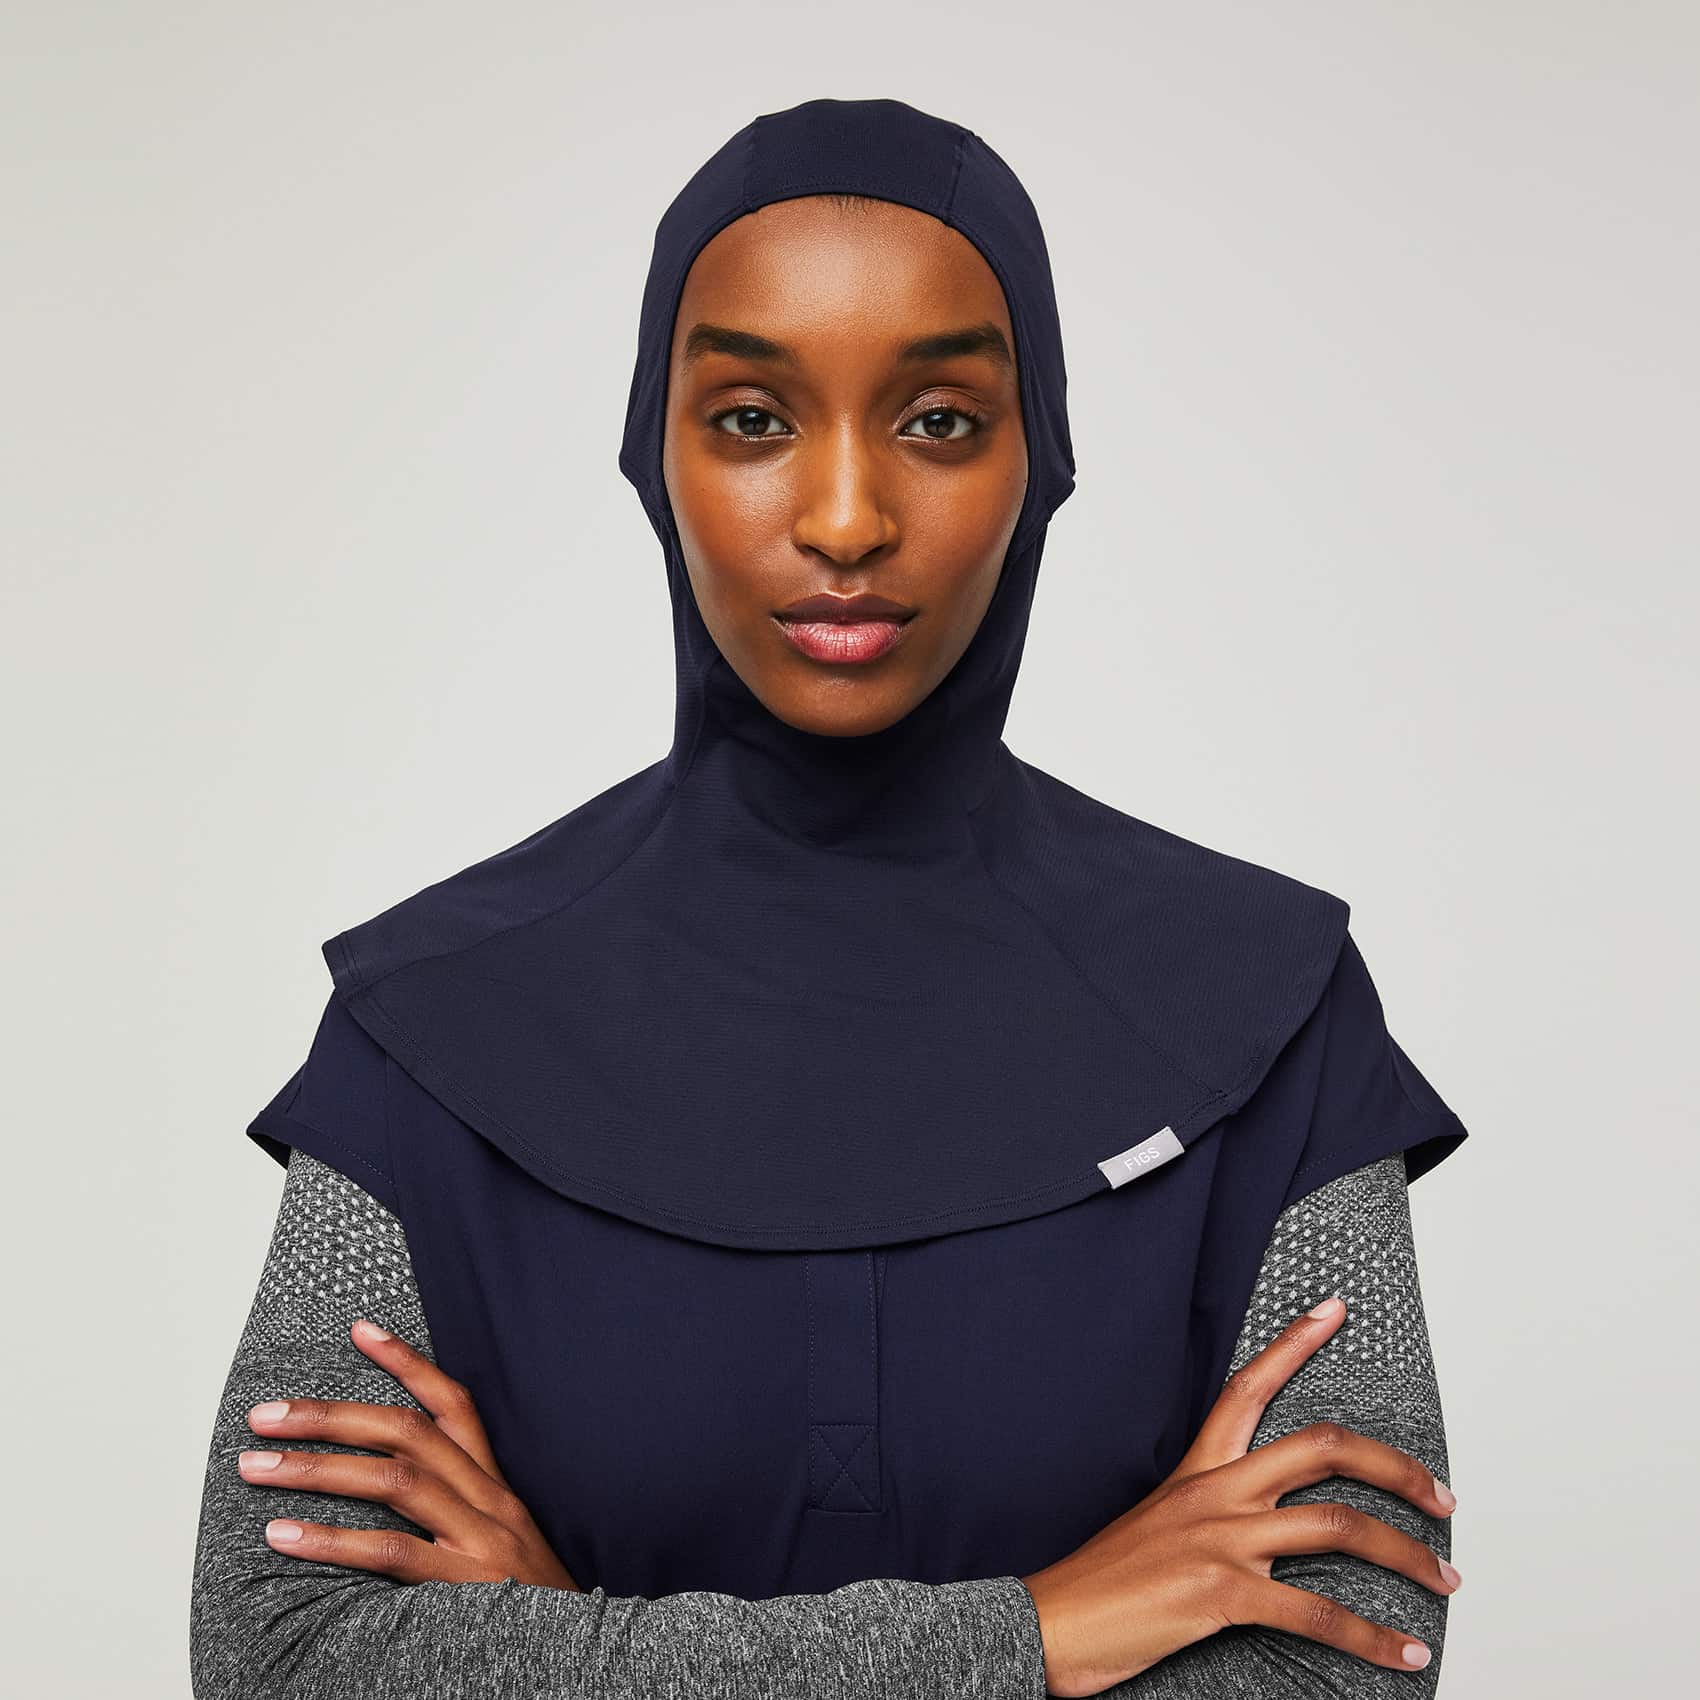 https://cdn.shopify.com/s/files/1/0139/8942/products/Womens-Hijab-navy-1.jpg?v=1635382462